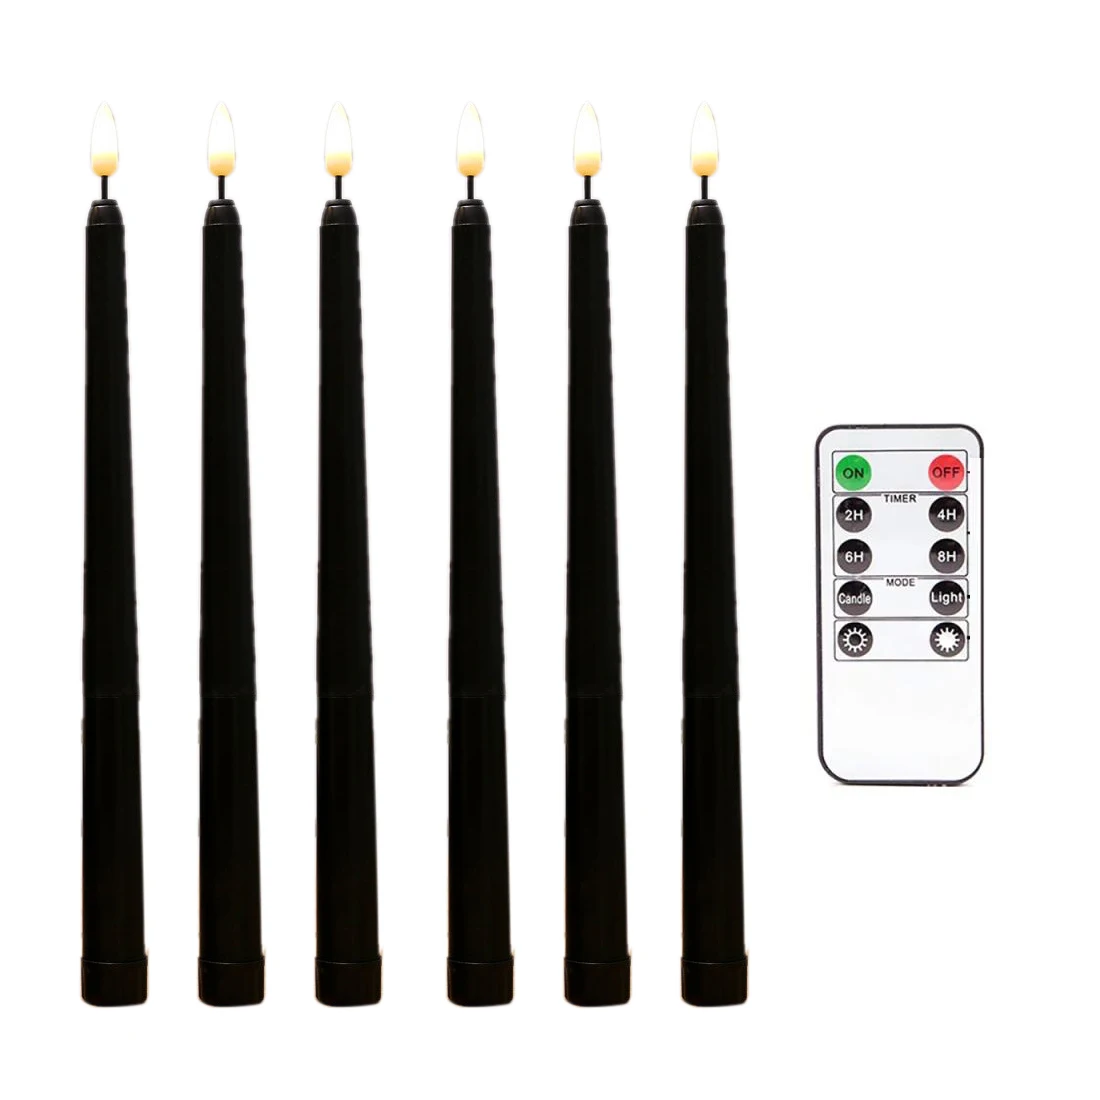 

6 шт. беспламенные черные конусные свечи мерцающие с 10-клавишным дистанционным таймером, работающие от батареек